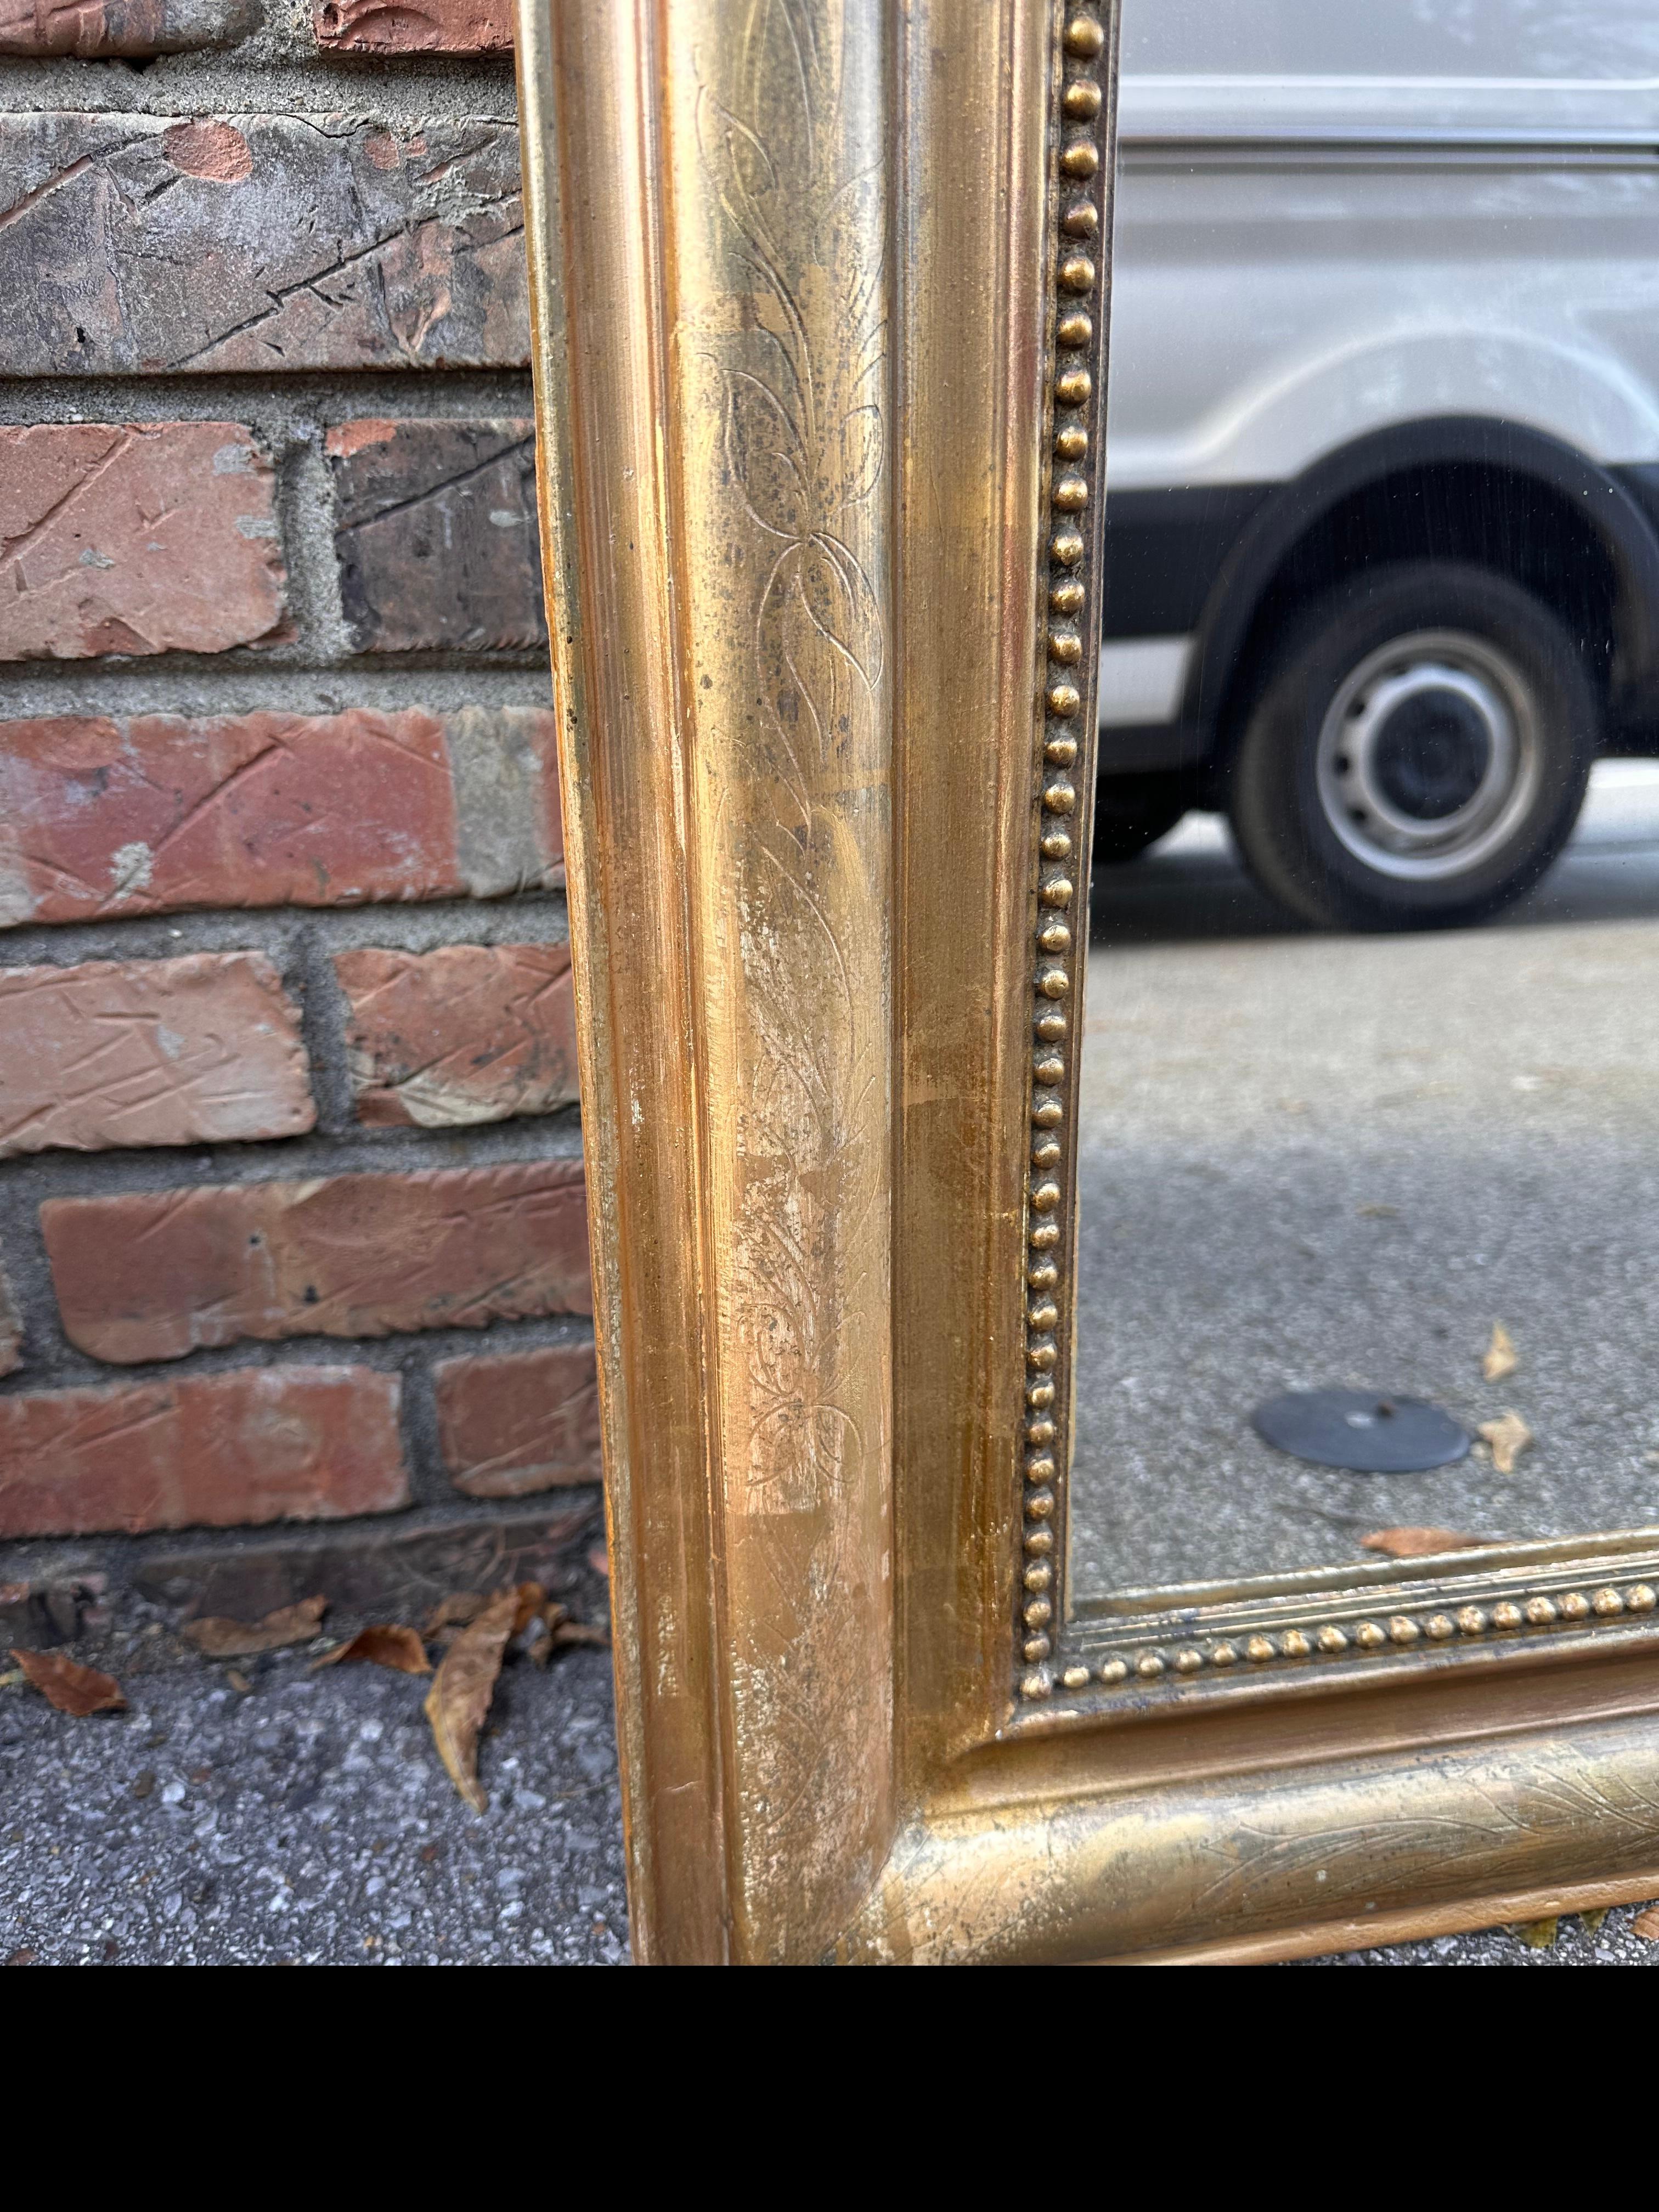 Dies ist ein schöner Louis Philippe-Spiegel aus dem 19. Jahrhundert. Dieses Stück ist in ausgezeichnetem Zustand, ohne Fehlstellen in der inneren Perlenbordüre. Die äußere Umrandung ist mit handgeschnitzten Blumendetails versehen, und das Gold